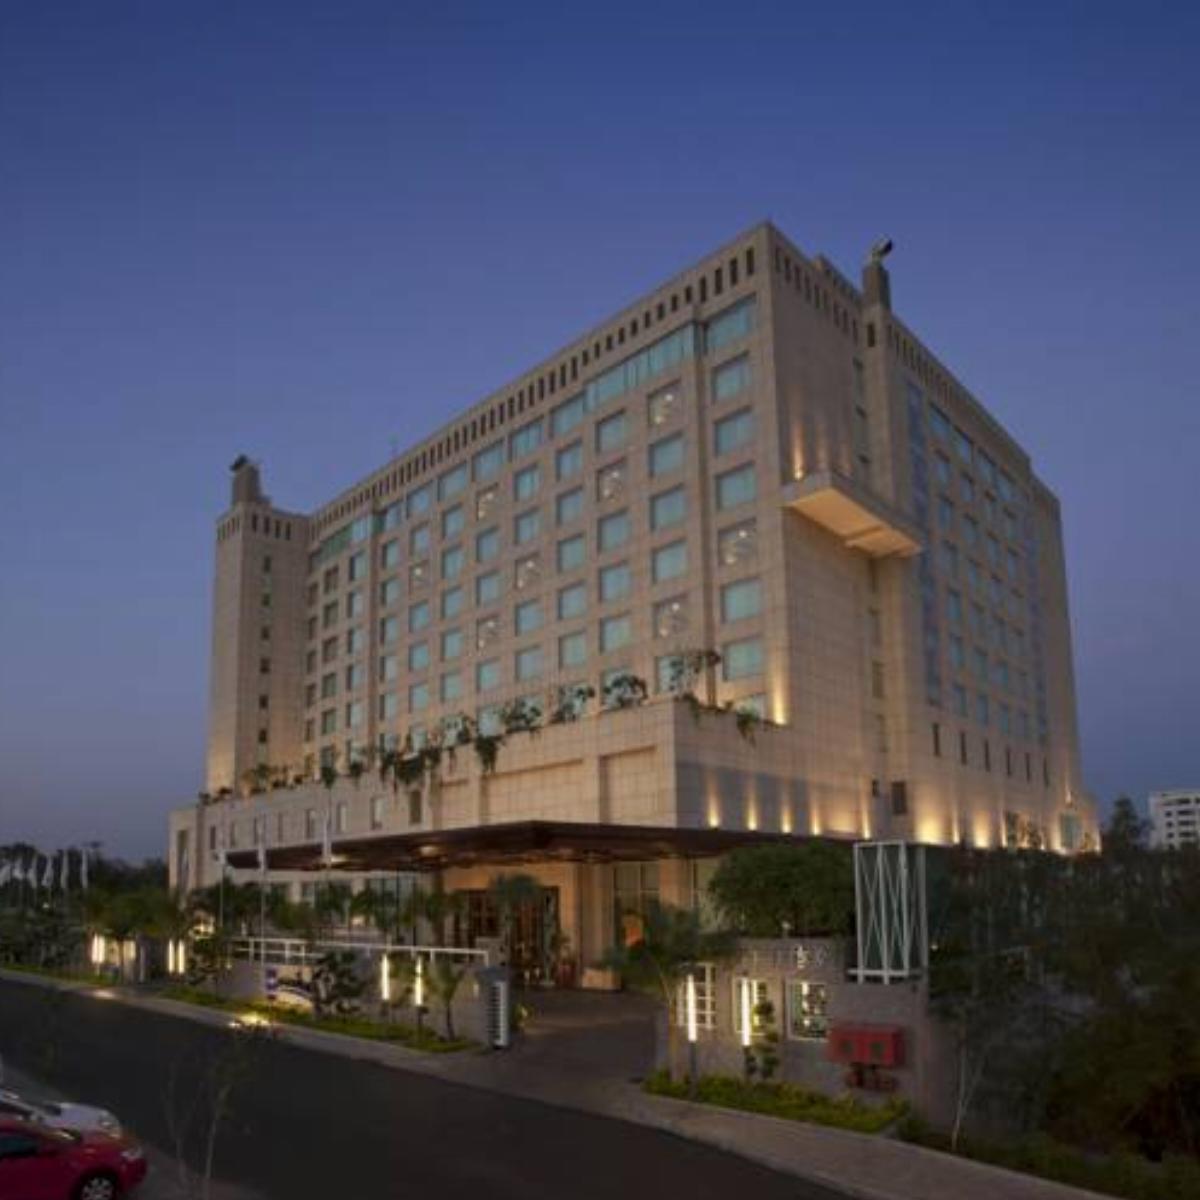 Radisson Blu Hotel, Nagpur